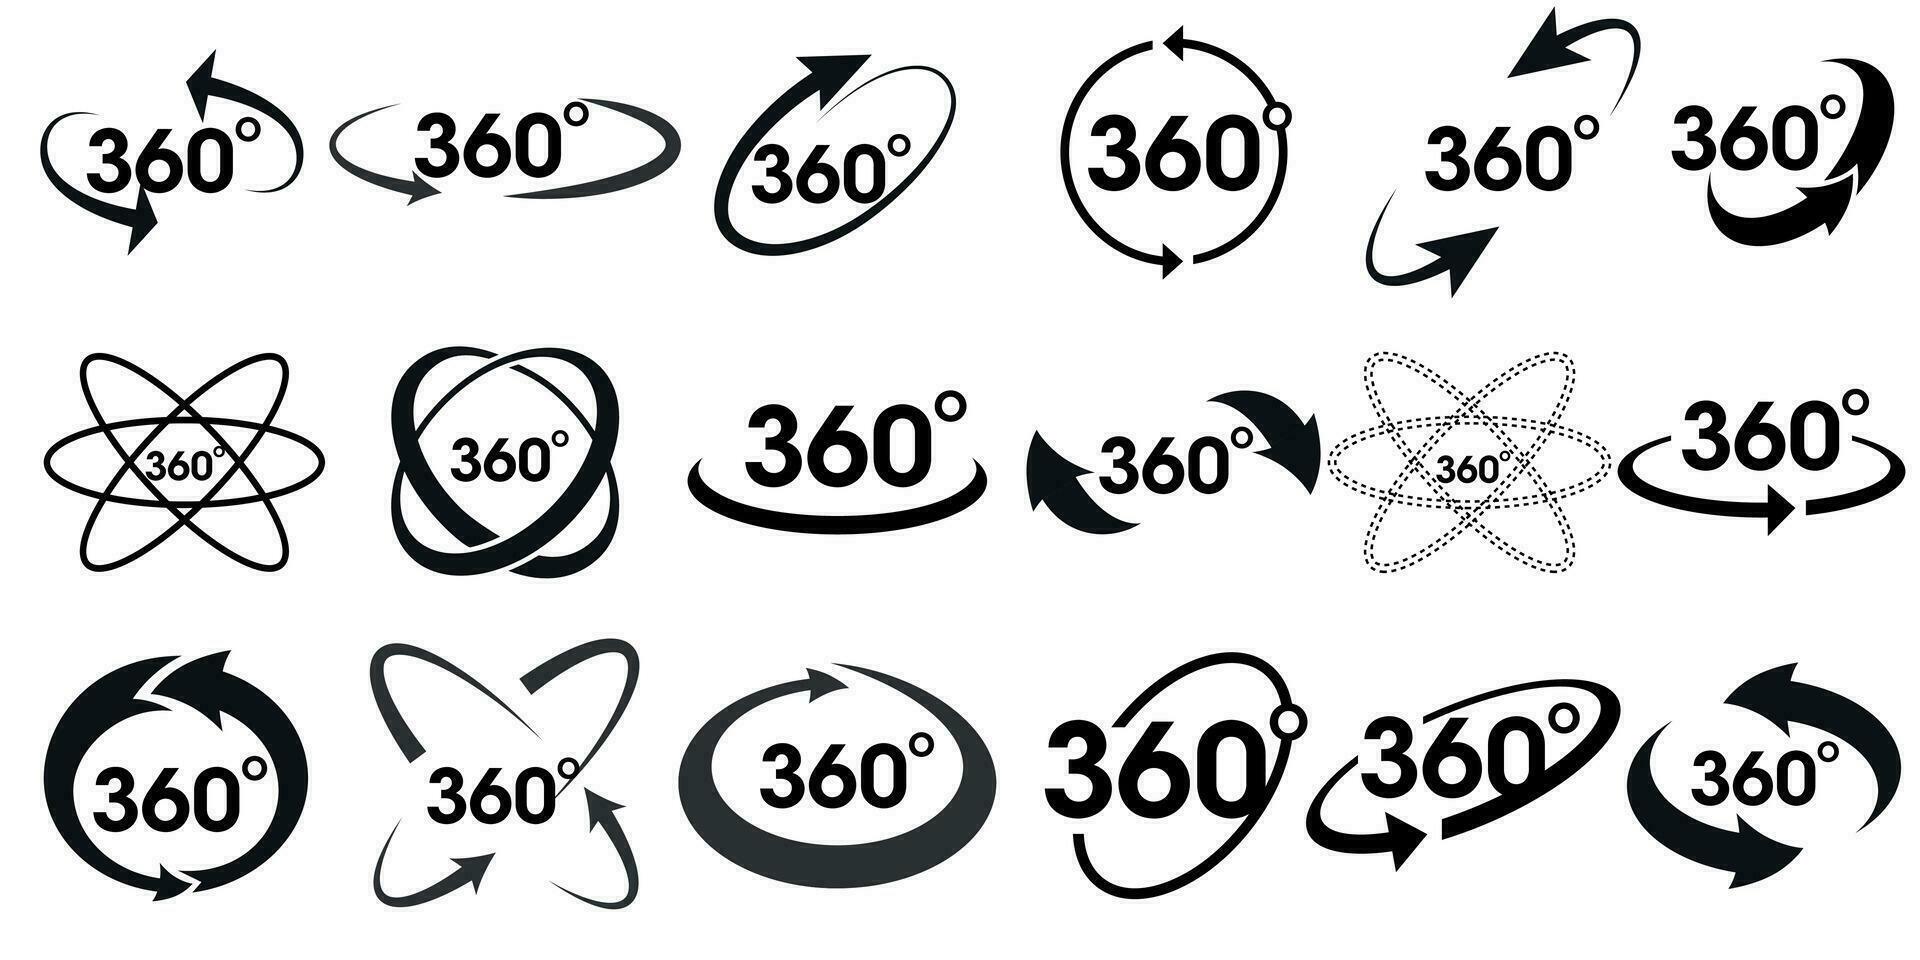 360 diplôme vues de vecteur cercle Icônes ensemble isolé de le Contexte. panneaux avec flèches à indiquer le rotation ou panoramas à 360 degrés. vecteur illustration.